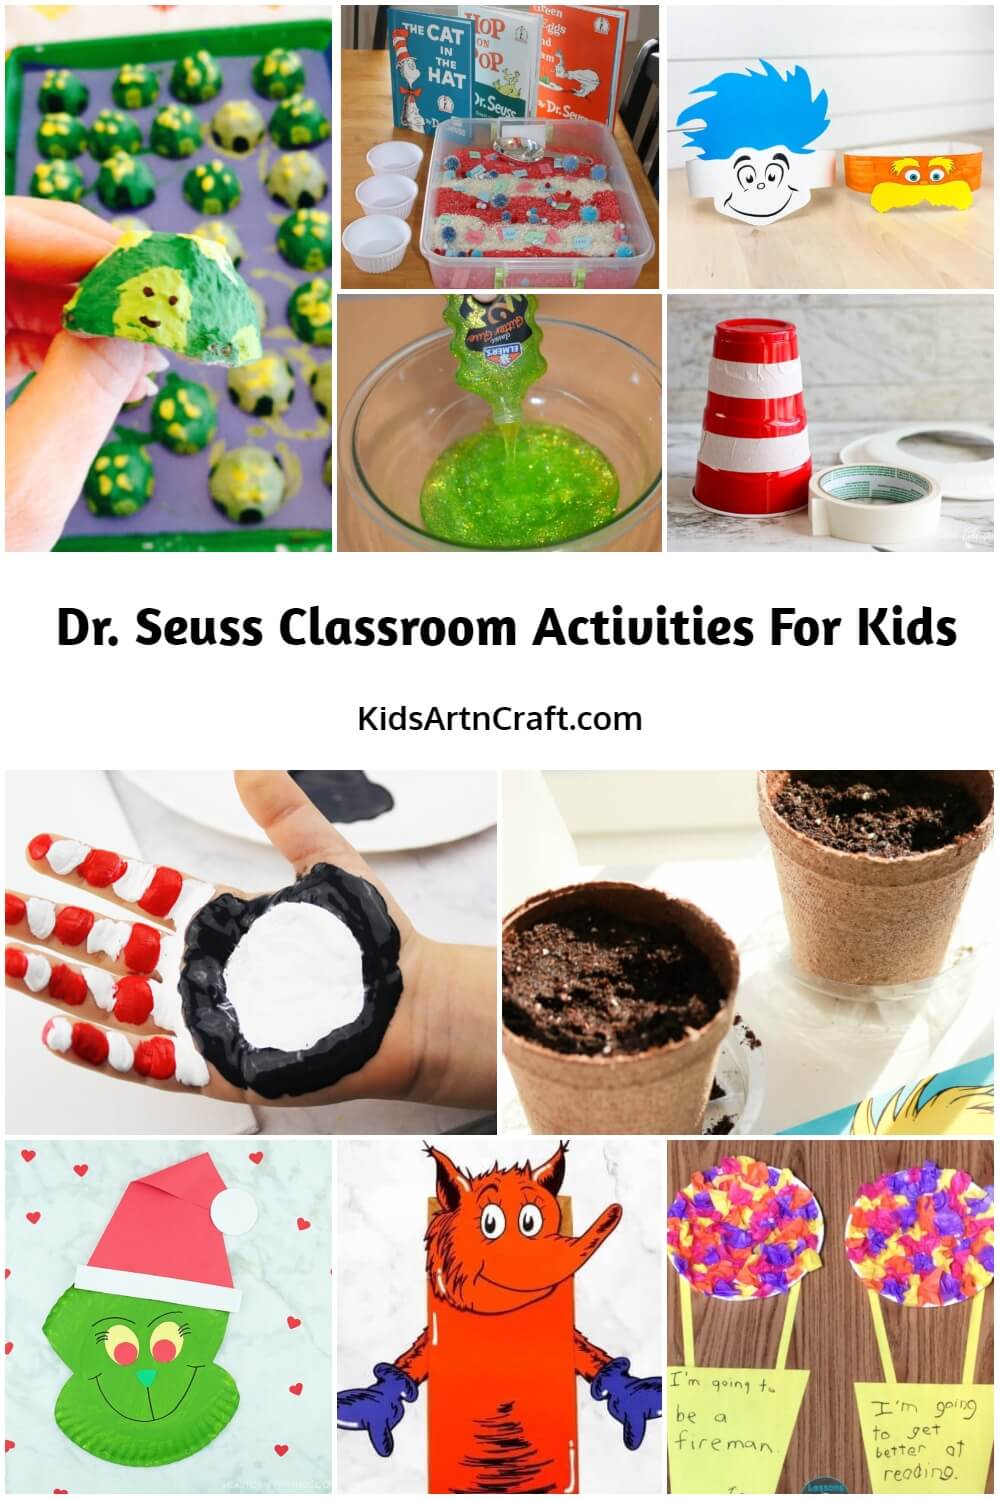 Dr. Seuss Classroom Ideas & Activities for Preschoolers